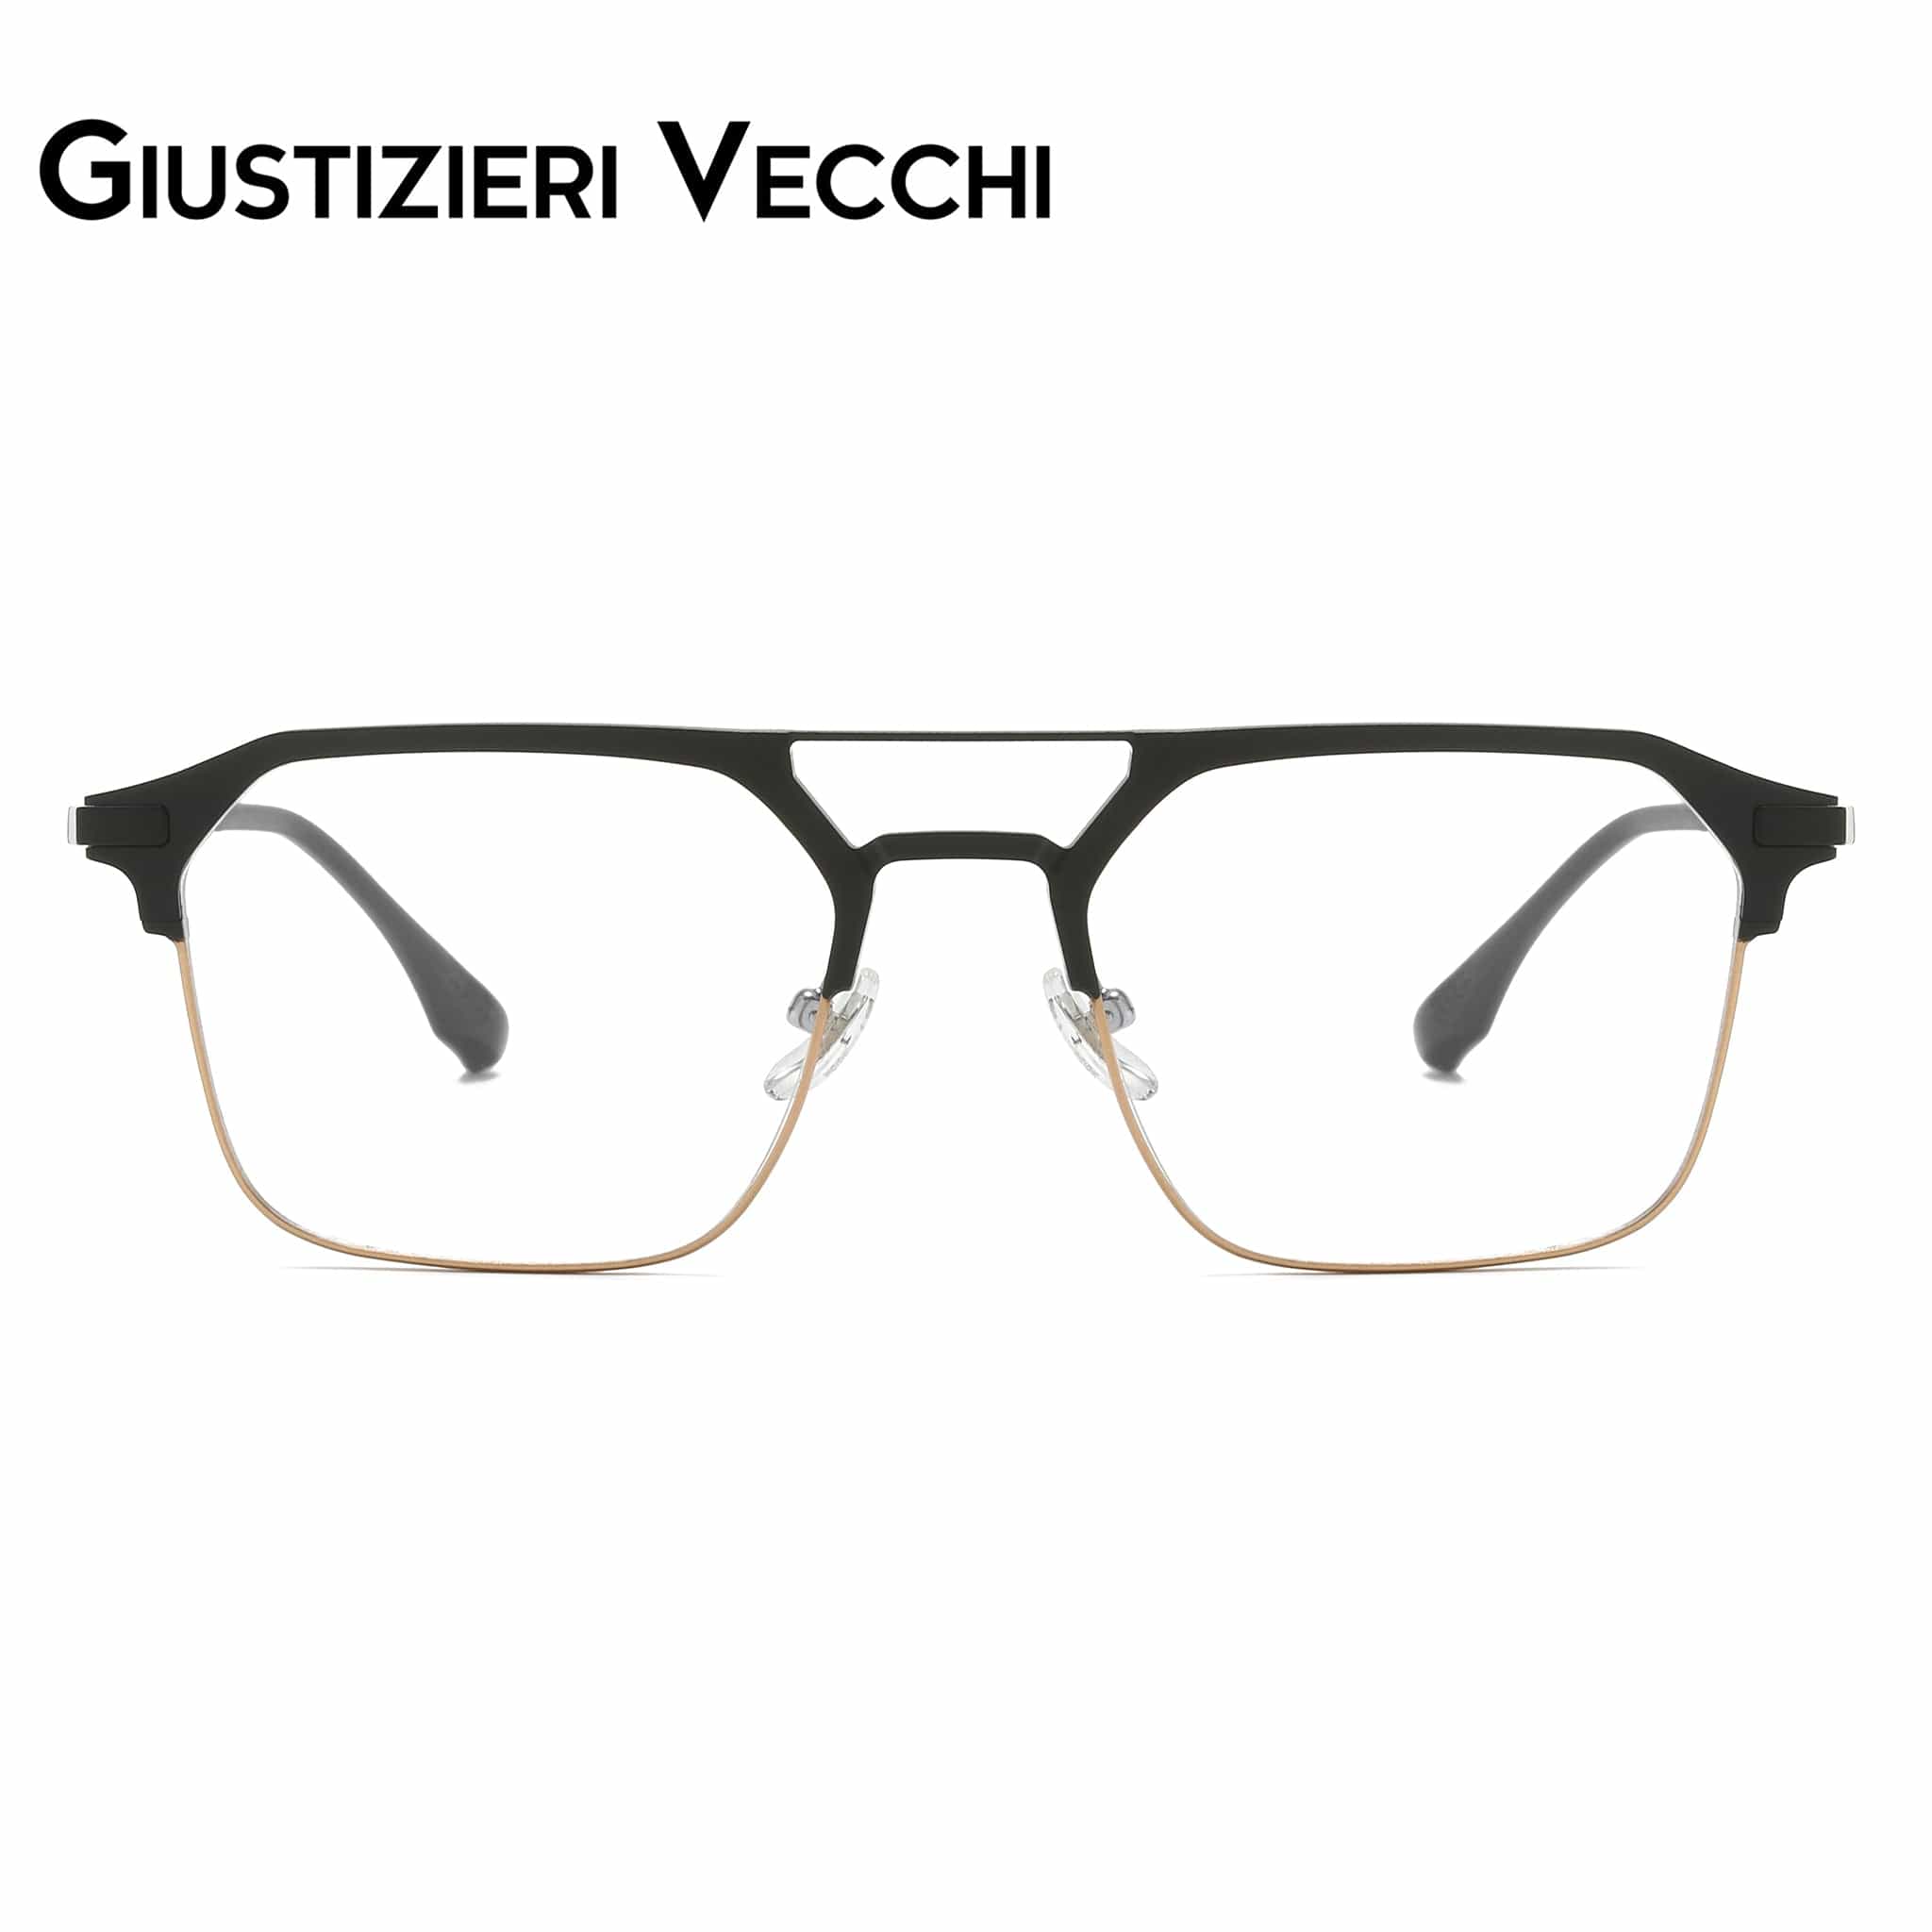 GIUSTIZIERI VECCHI Eyeglasses Medium / Black with Gold IceBlast Duo